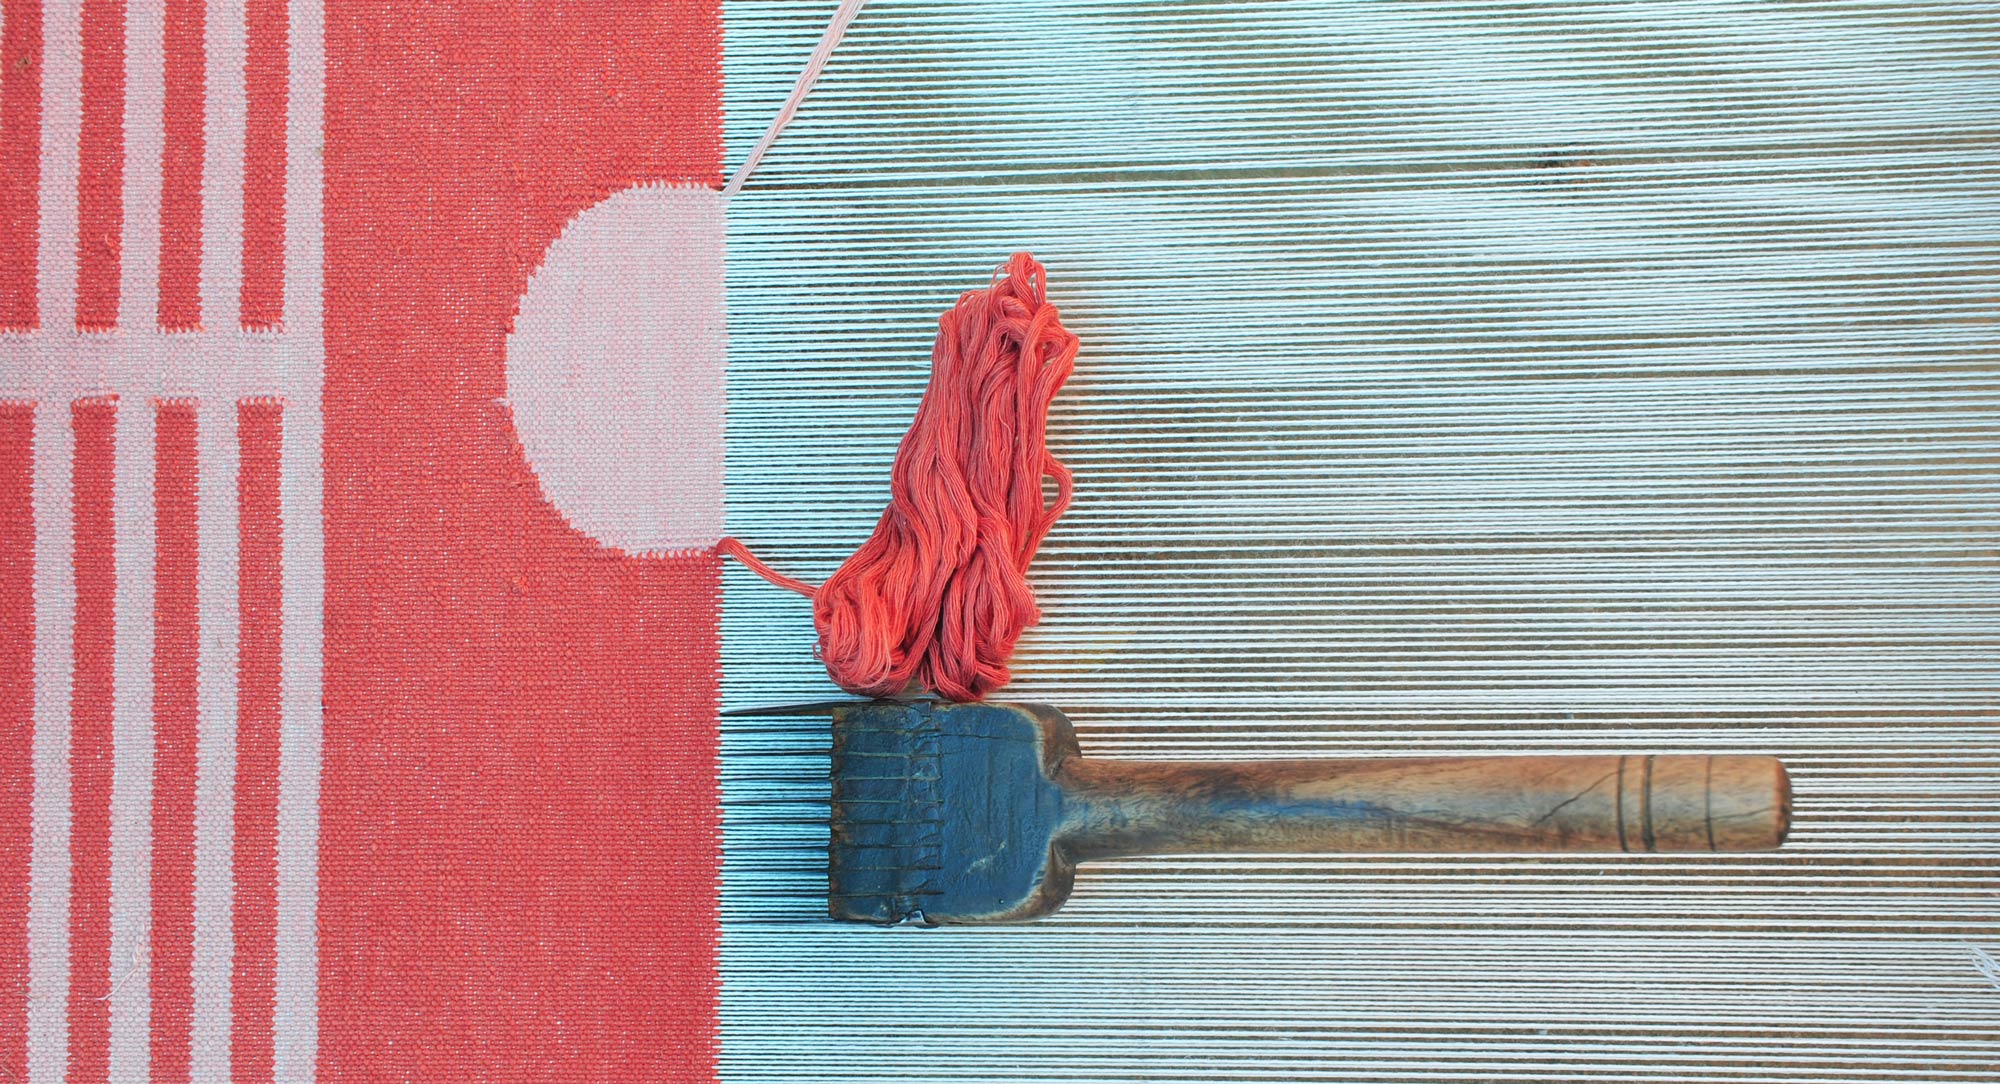 Handloom Weaving